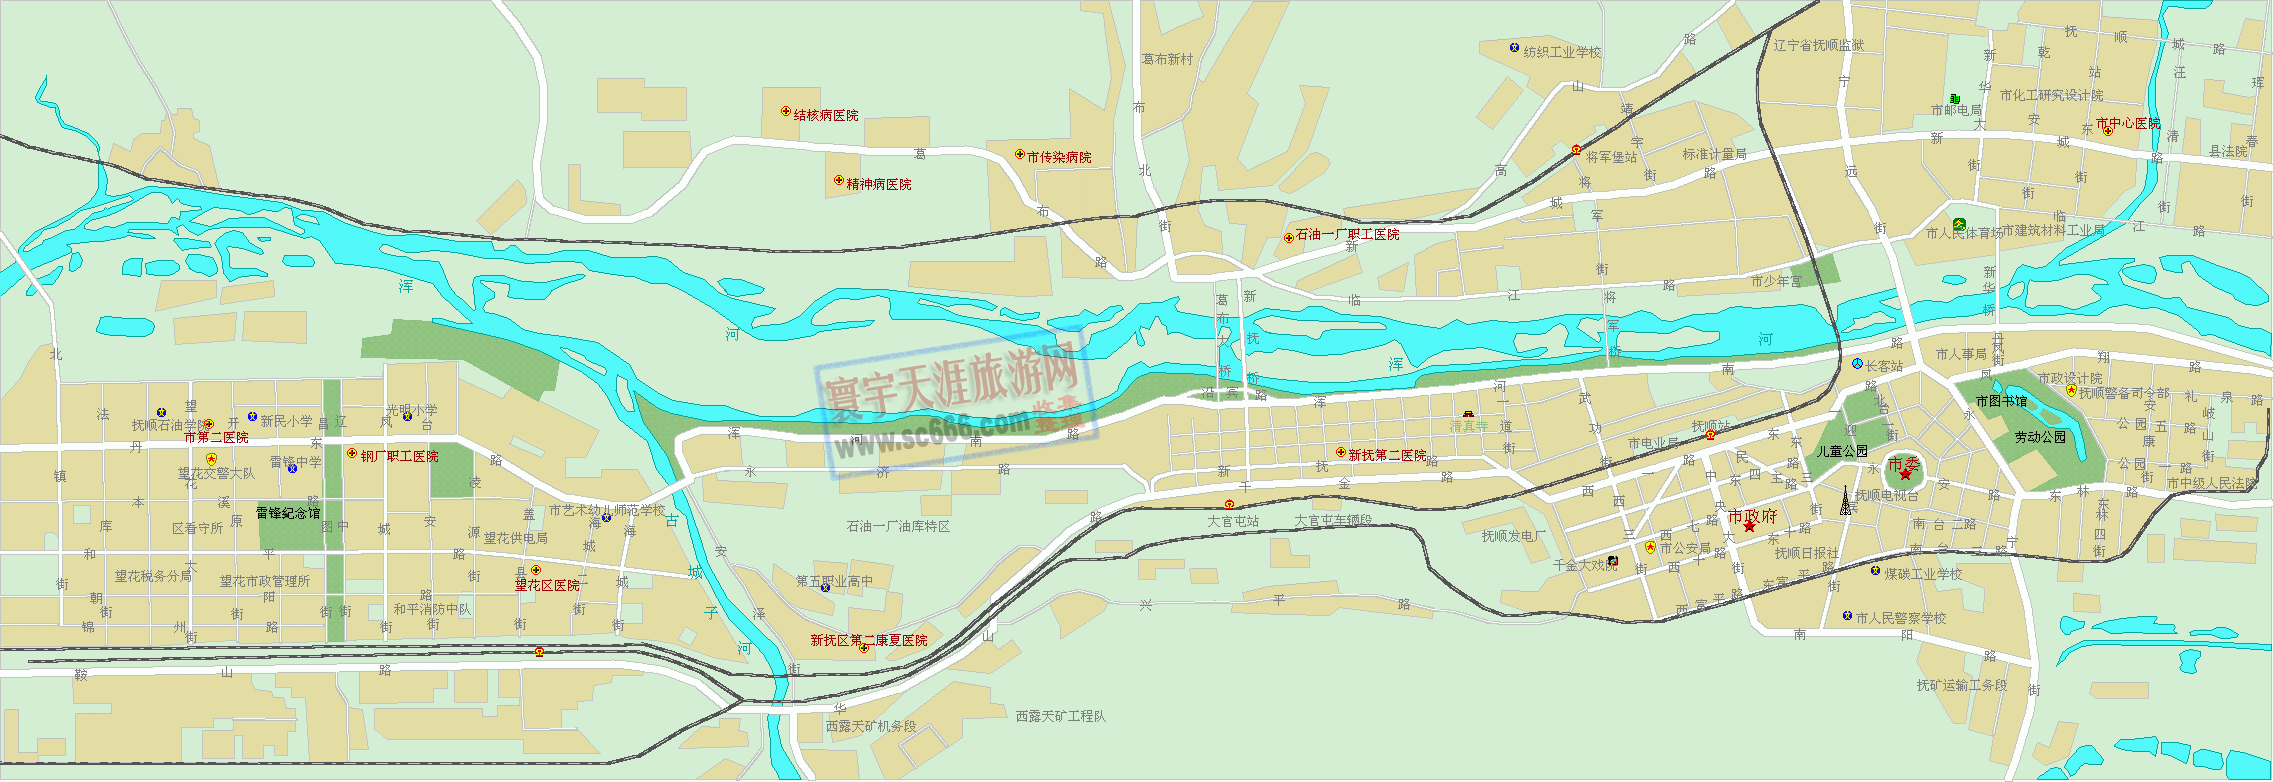 抚顺市城区地图